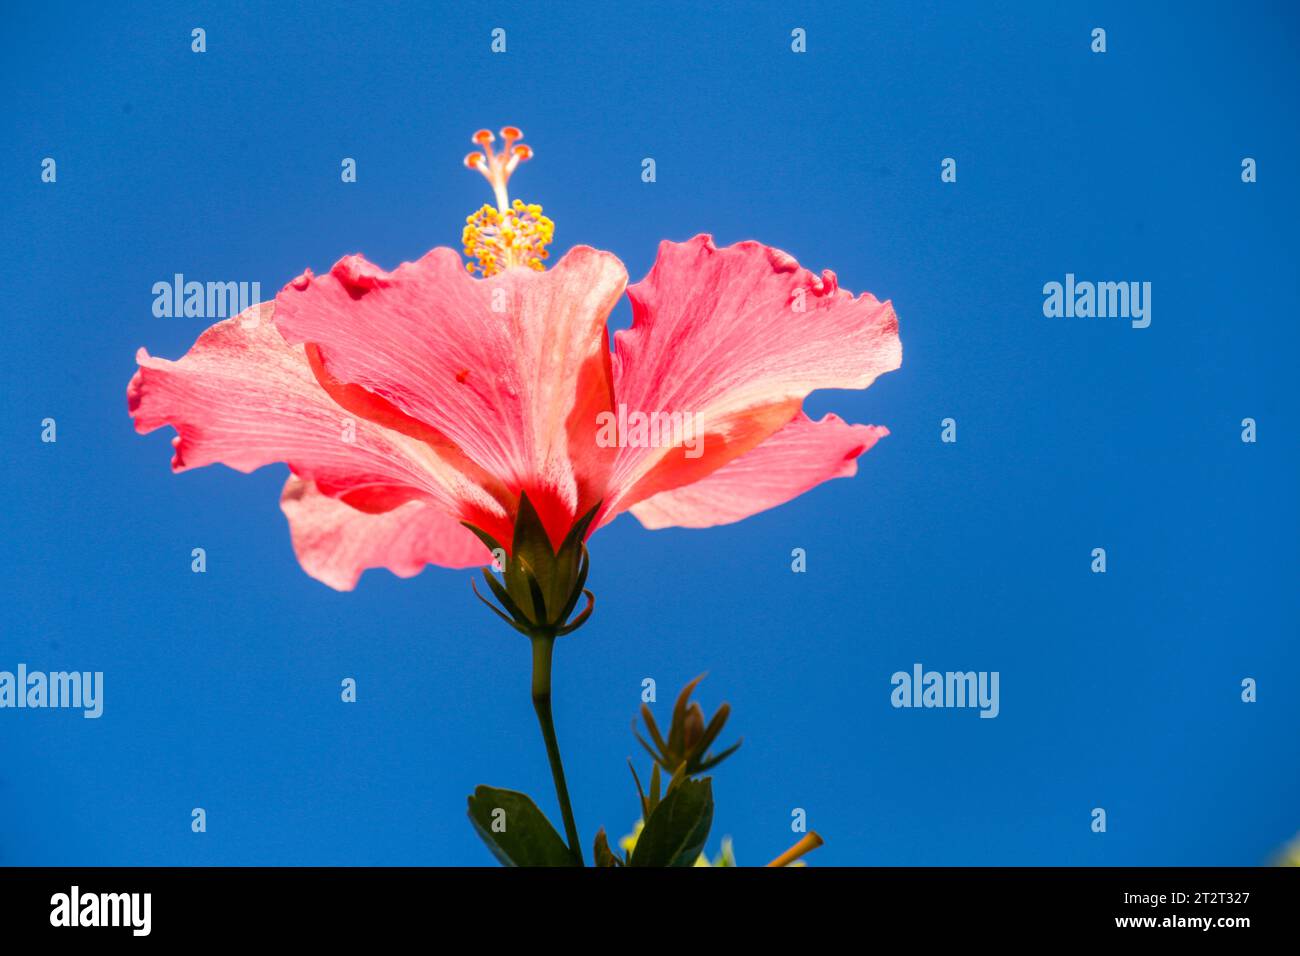 Hibiscus rouge dans mon jardin Banque D'Images